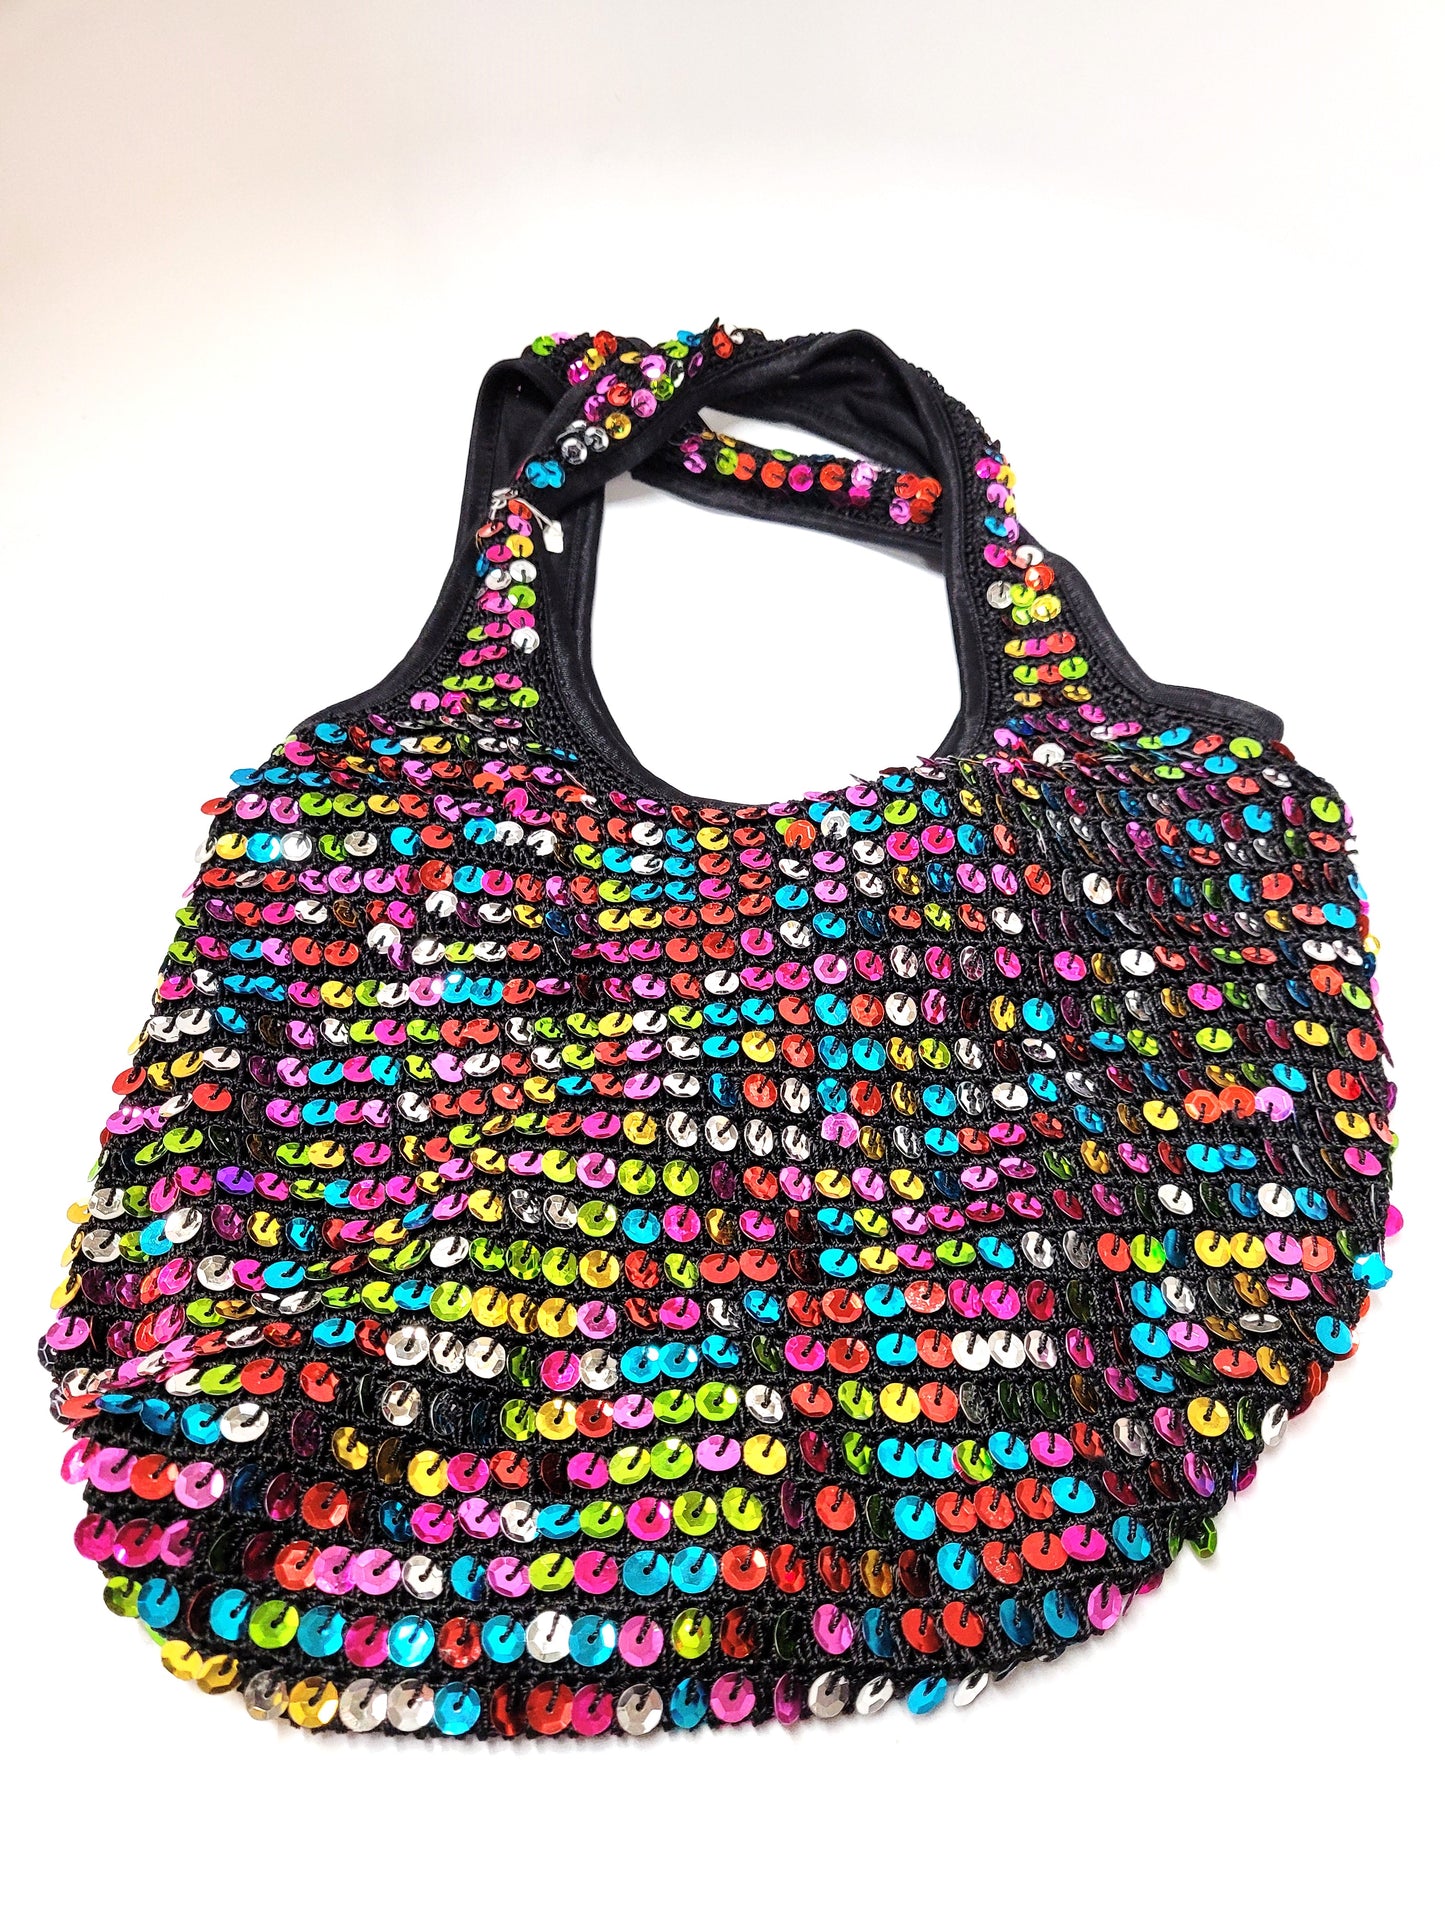 Sequin Bag #66-16003